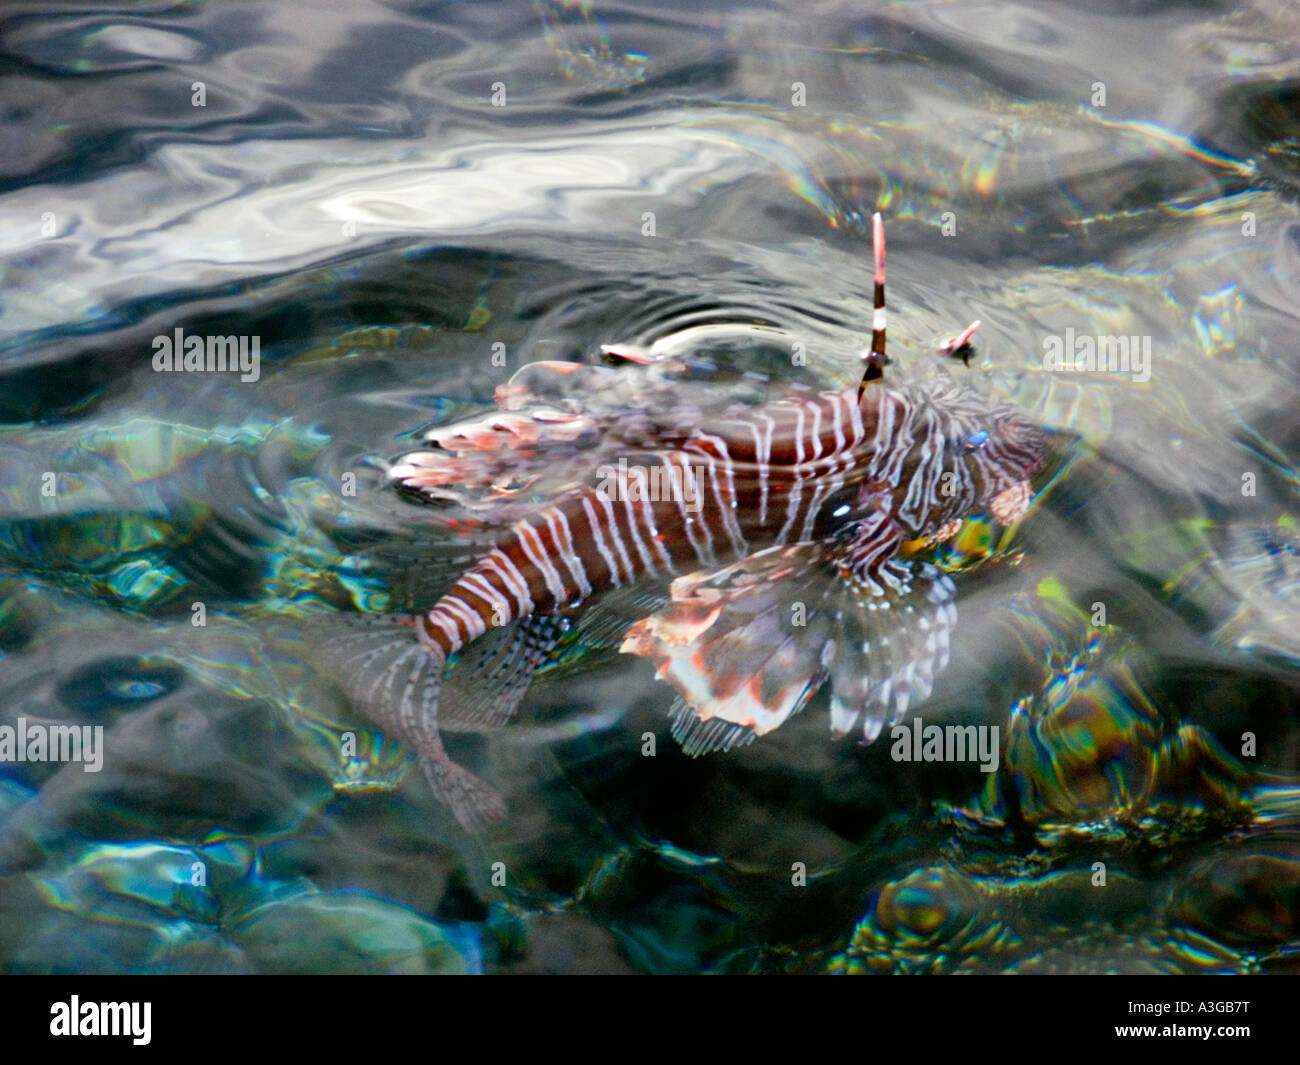 Poison nageoire de poisson PTEROIS VOLITANS redfire feu poisson lion lion turkeyfish s'élever au-dessus de la surface de l'eau Banque D'Images